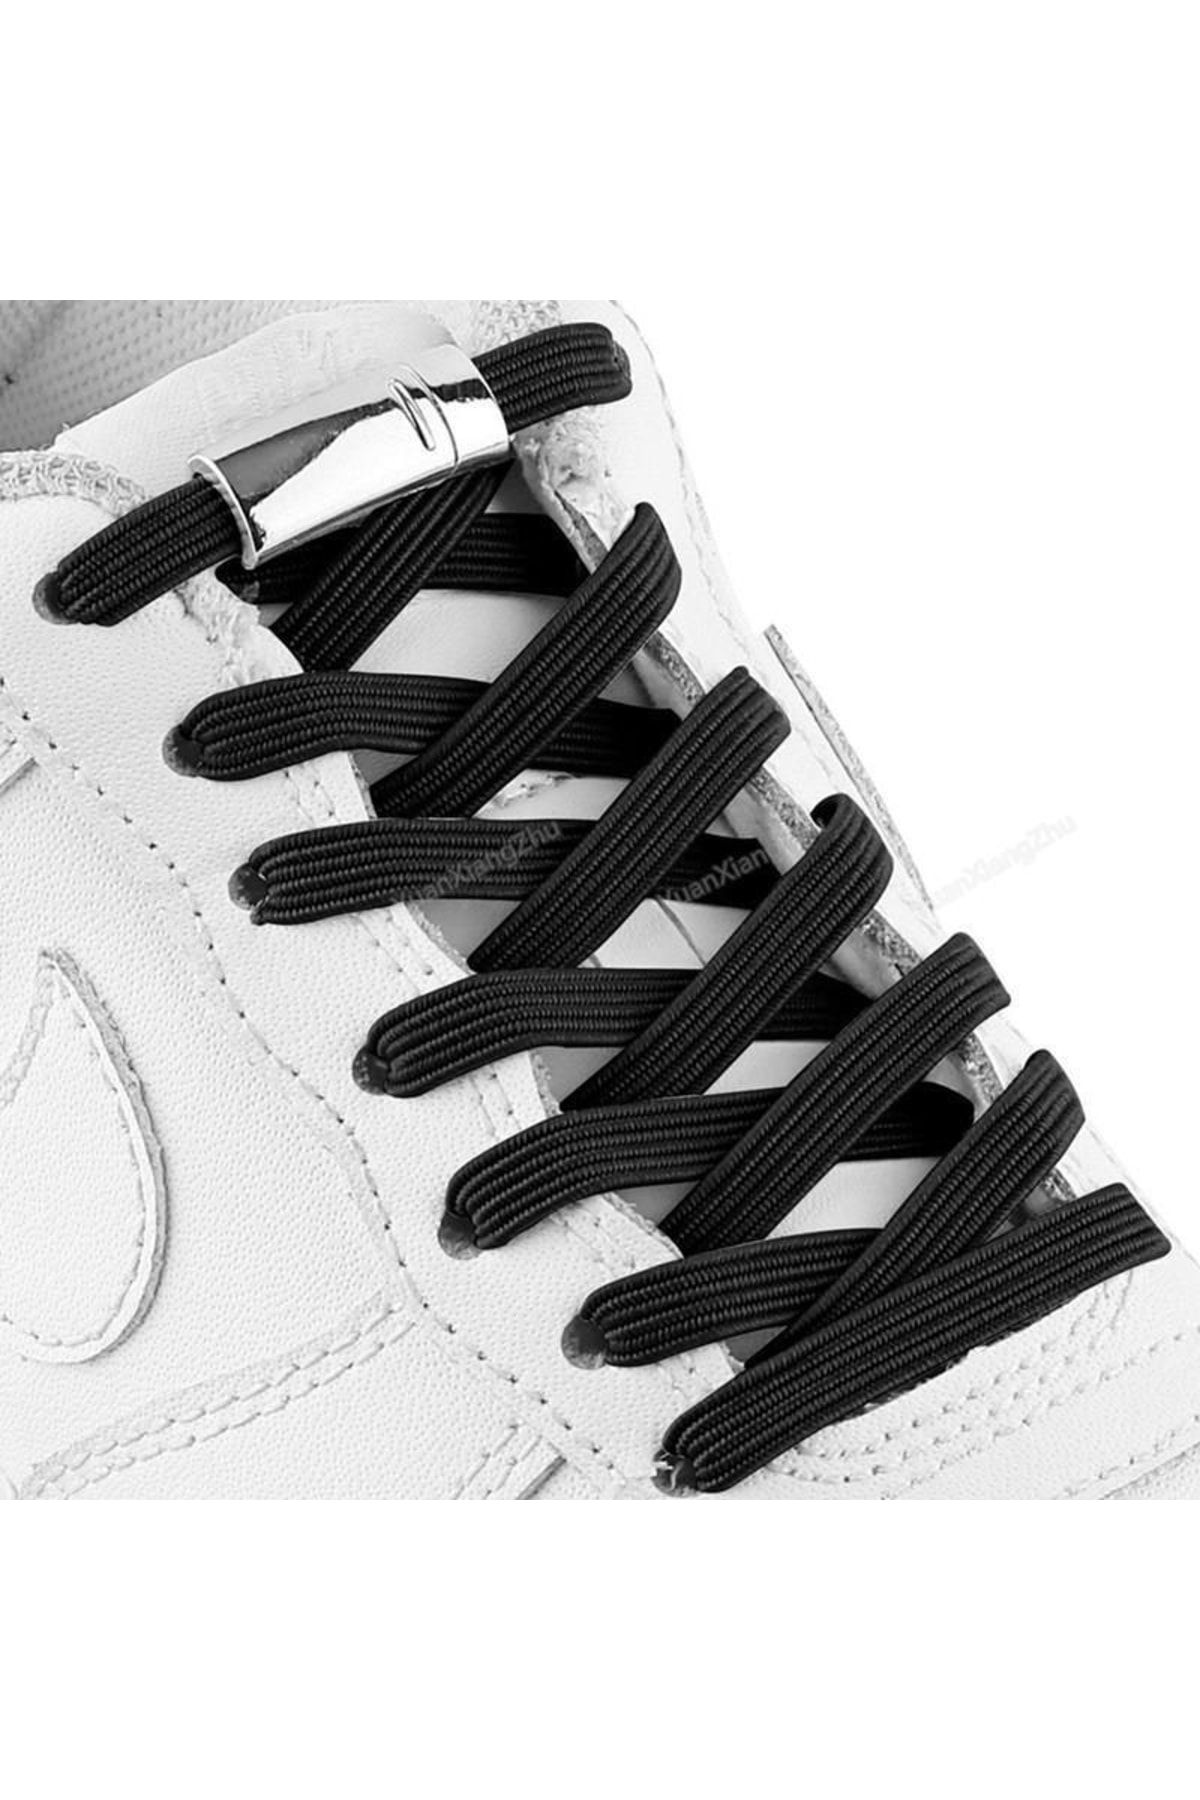 SARFEX Mıknatıslı Ayakkabı Bağcığı Çocuklar Için Kolay Kullanımlı Siyah Renk 100 Cm